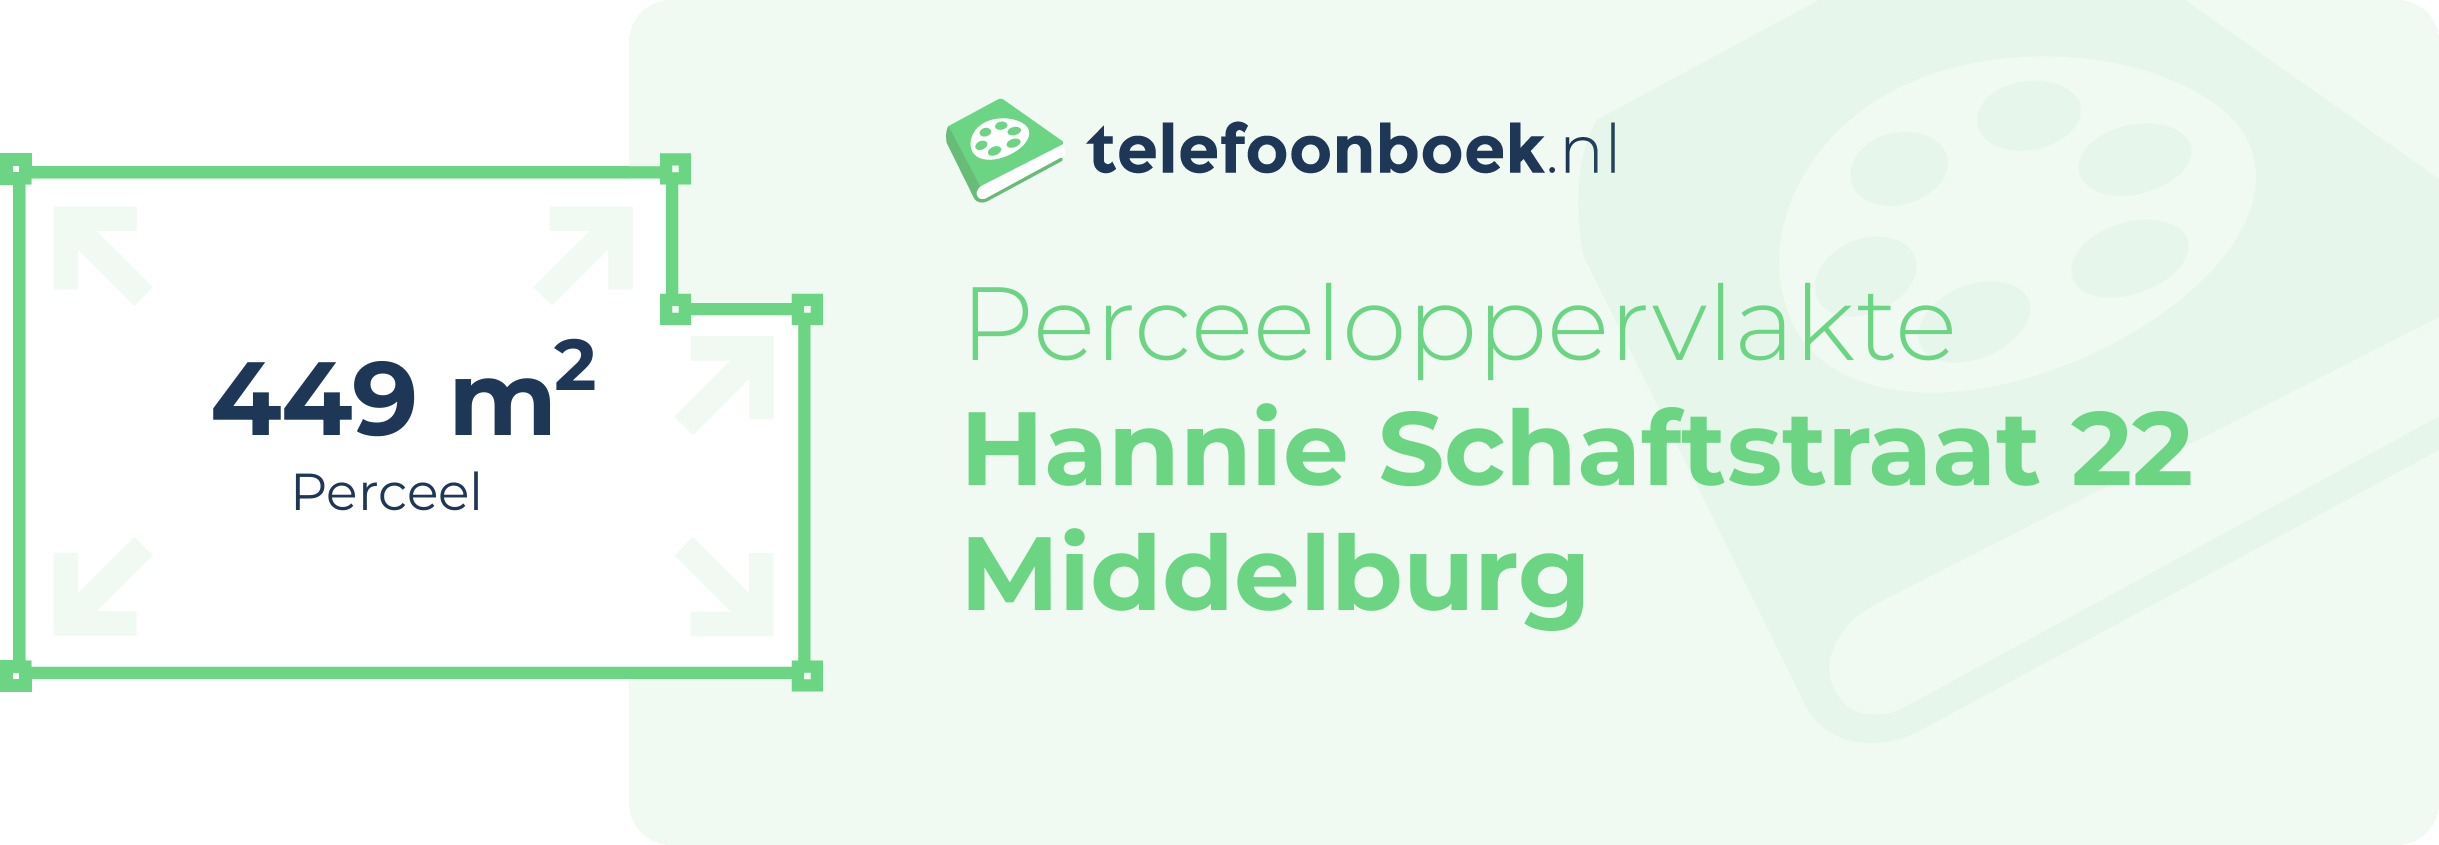 Perceeloppervlakte Hannie Schaftstraat 22 Middelburg